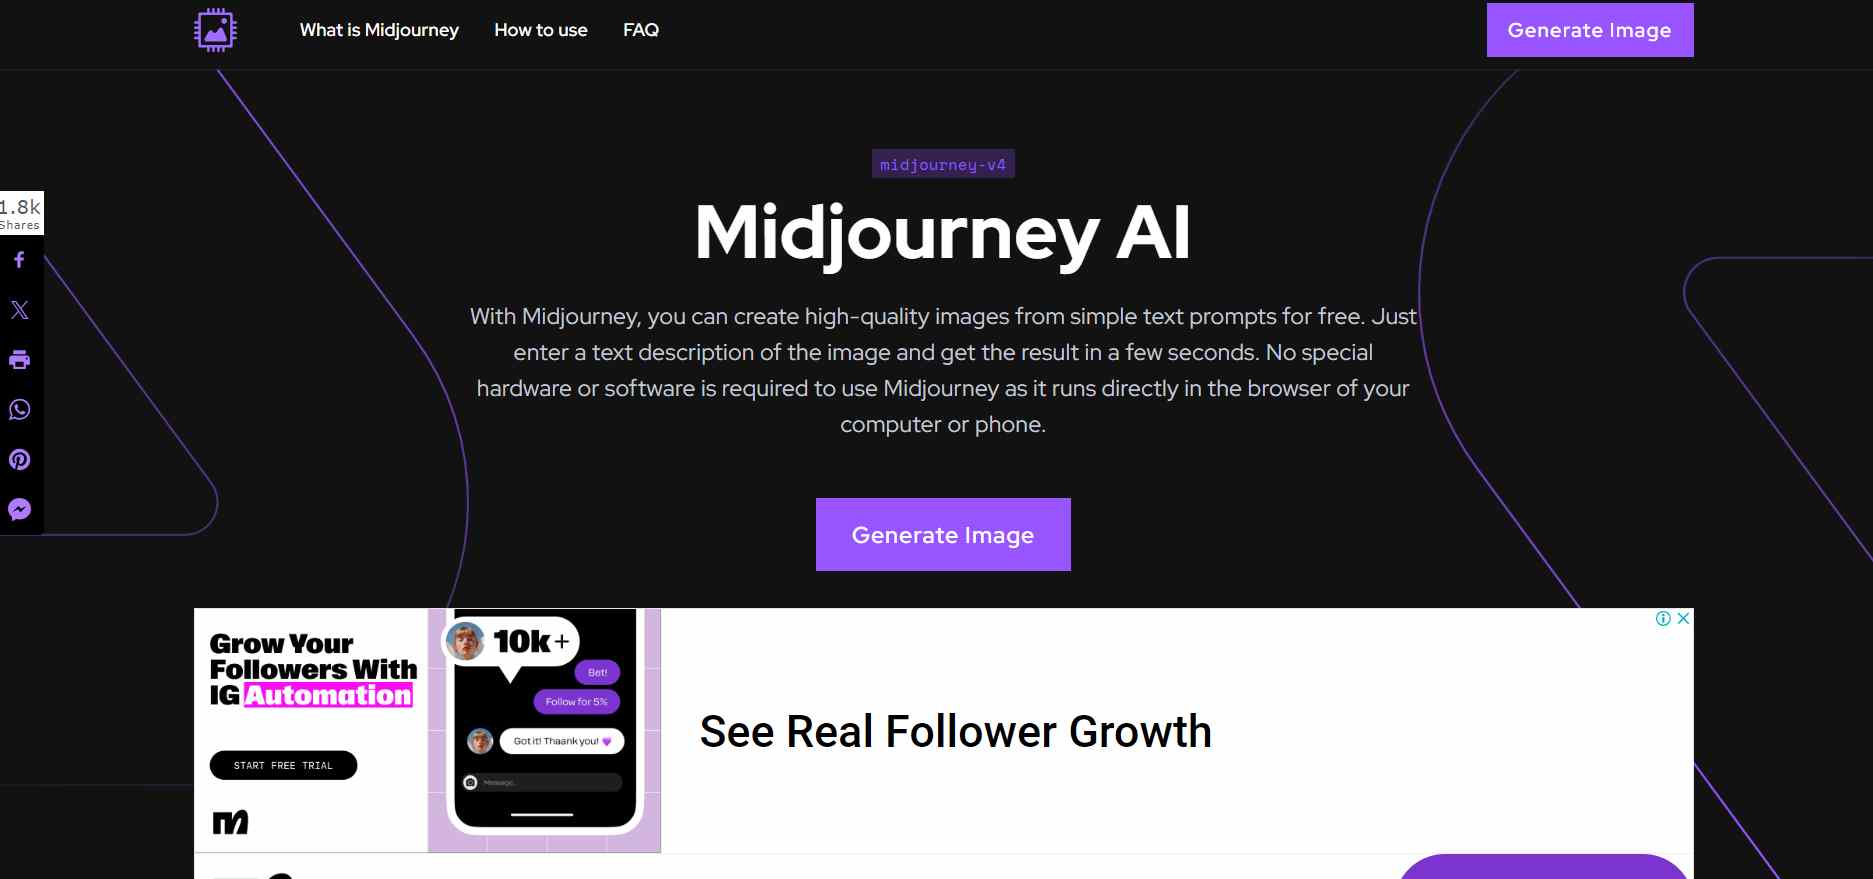  Explore Midjourney, uma ferramenta líder em geração de IA, apresentando texto estilizado e possíveis elementos gráficos indicativos de inovação e tecnologia. 